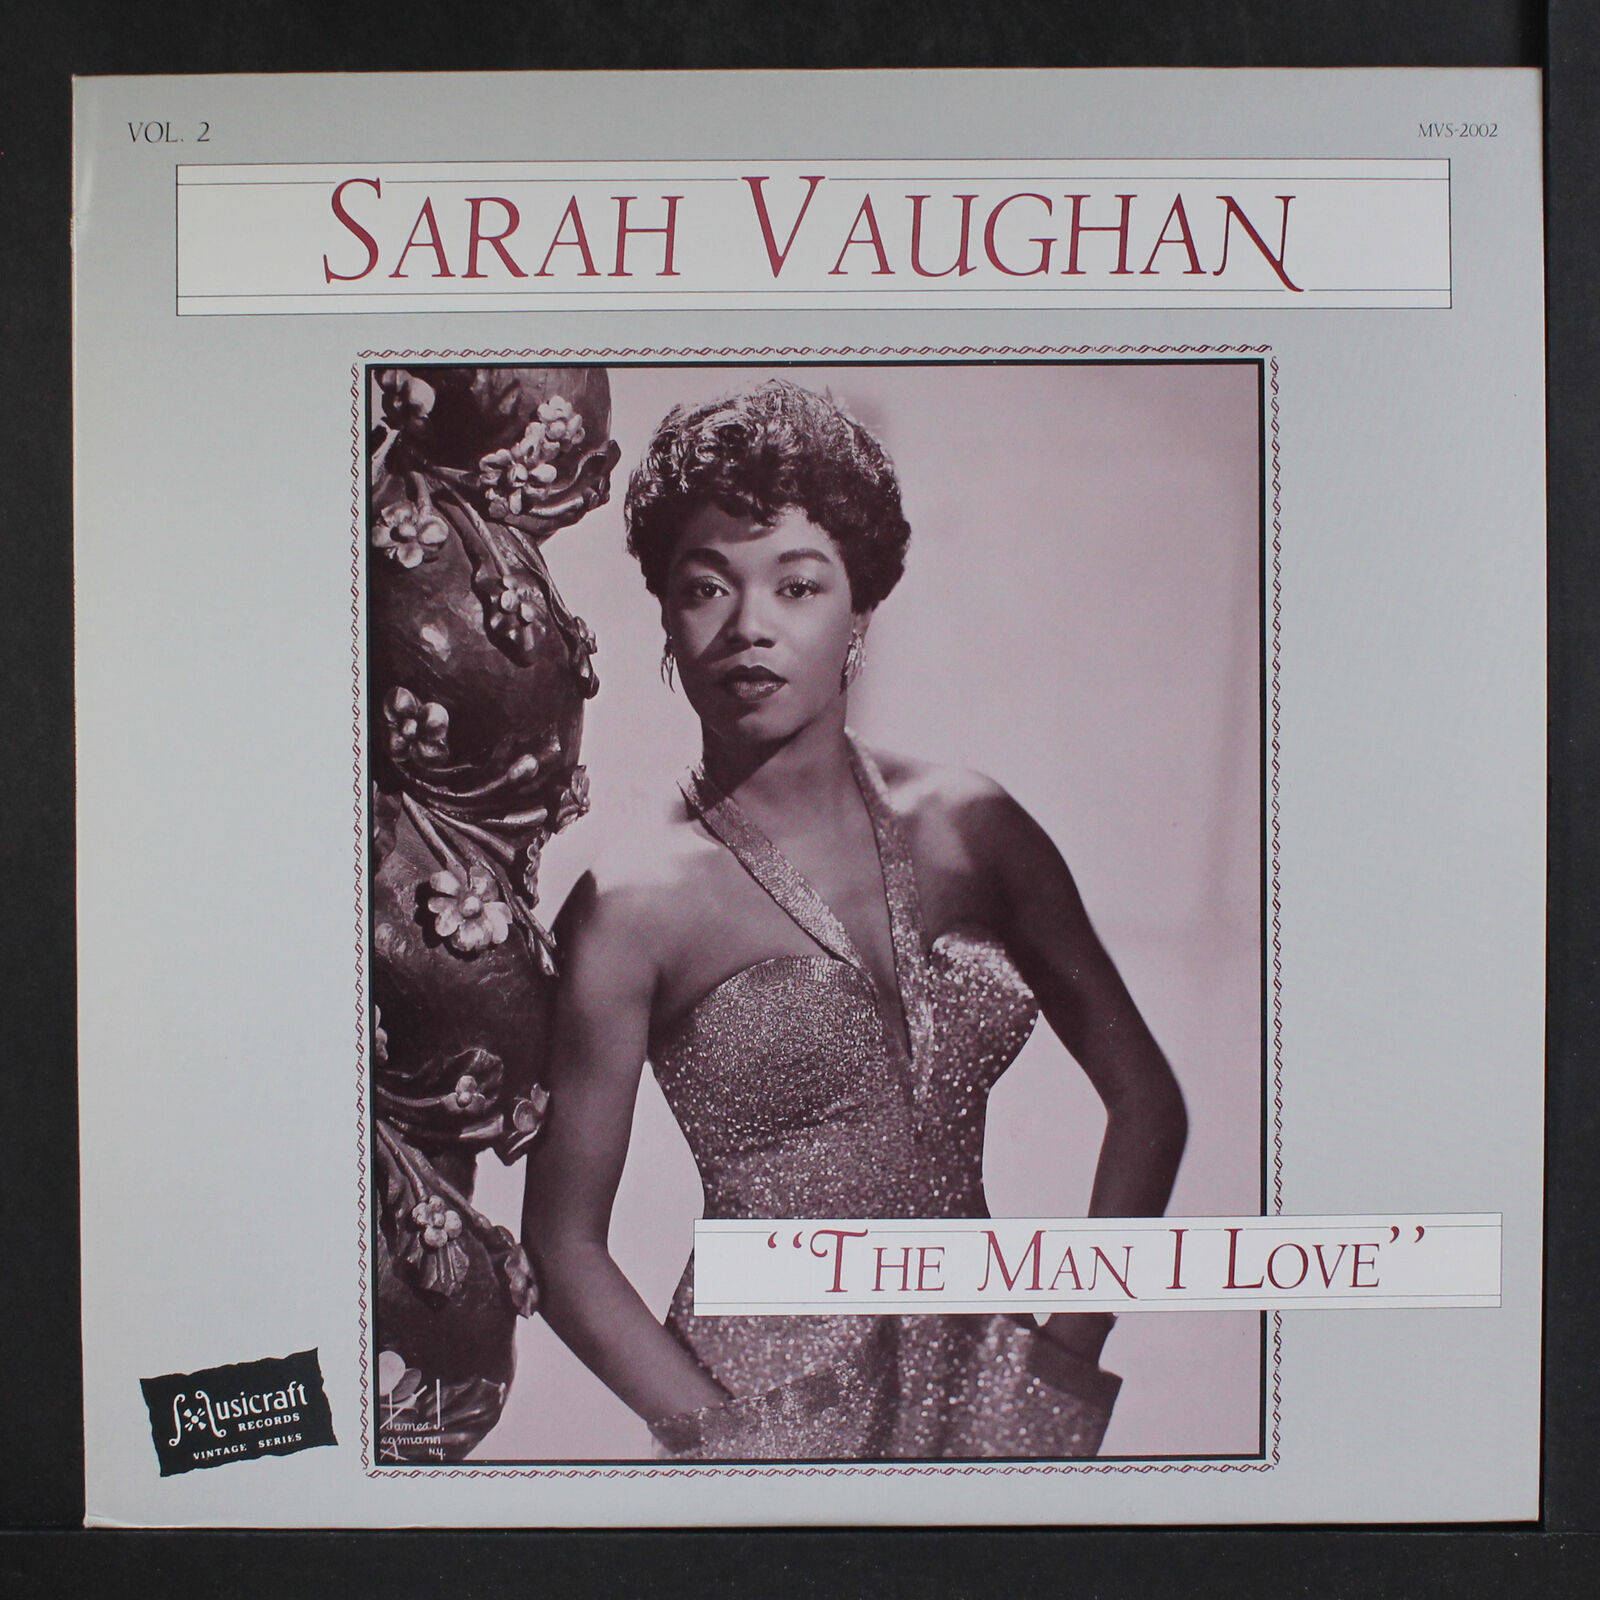 Semig Nu Sarah Vaughan. Wallpaper